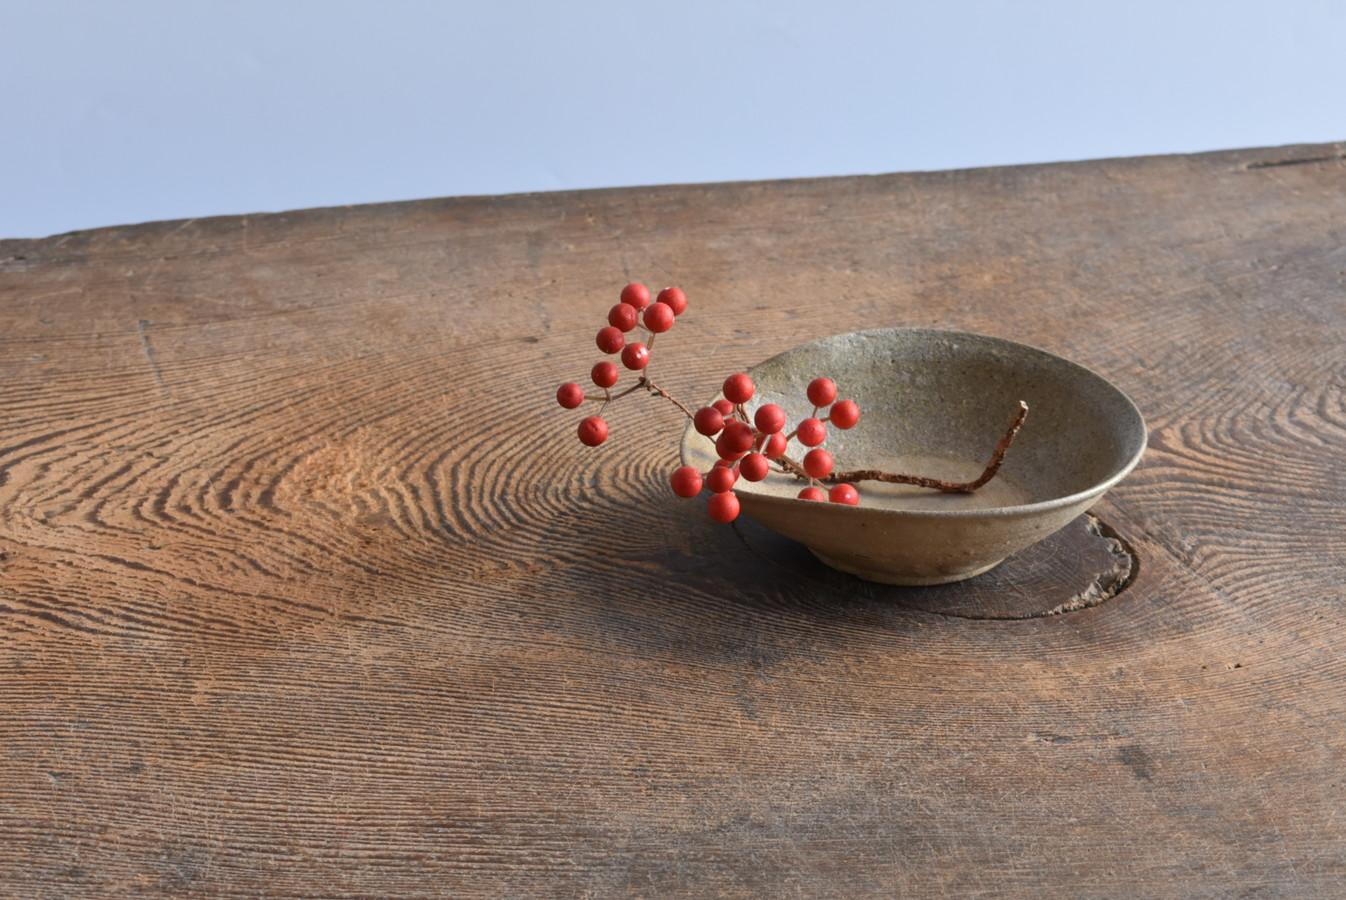 Dies ist unglasierte Keramik aus der Präfektur Aichi, Japan.
Der Zeitraum reicht vom 12. bis zum 13. Jahrhundert.
In diesem Gebiet wird bereits seit dem 8. Jahrhundert hochwertiges Tafelgeschirr hergestellt, aber die Nachfrage des einfachen Volkes